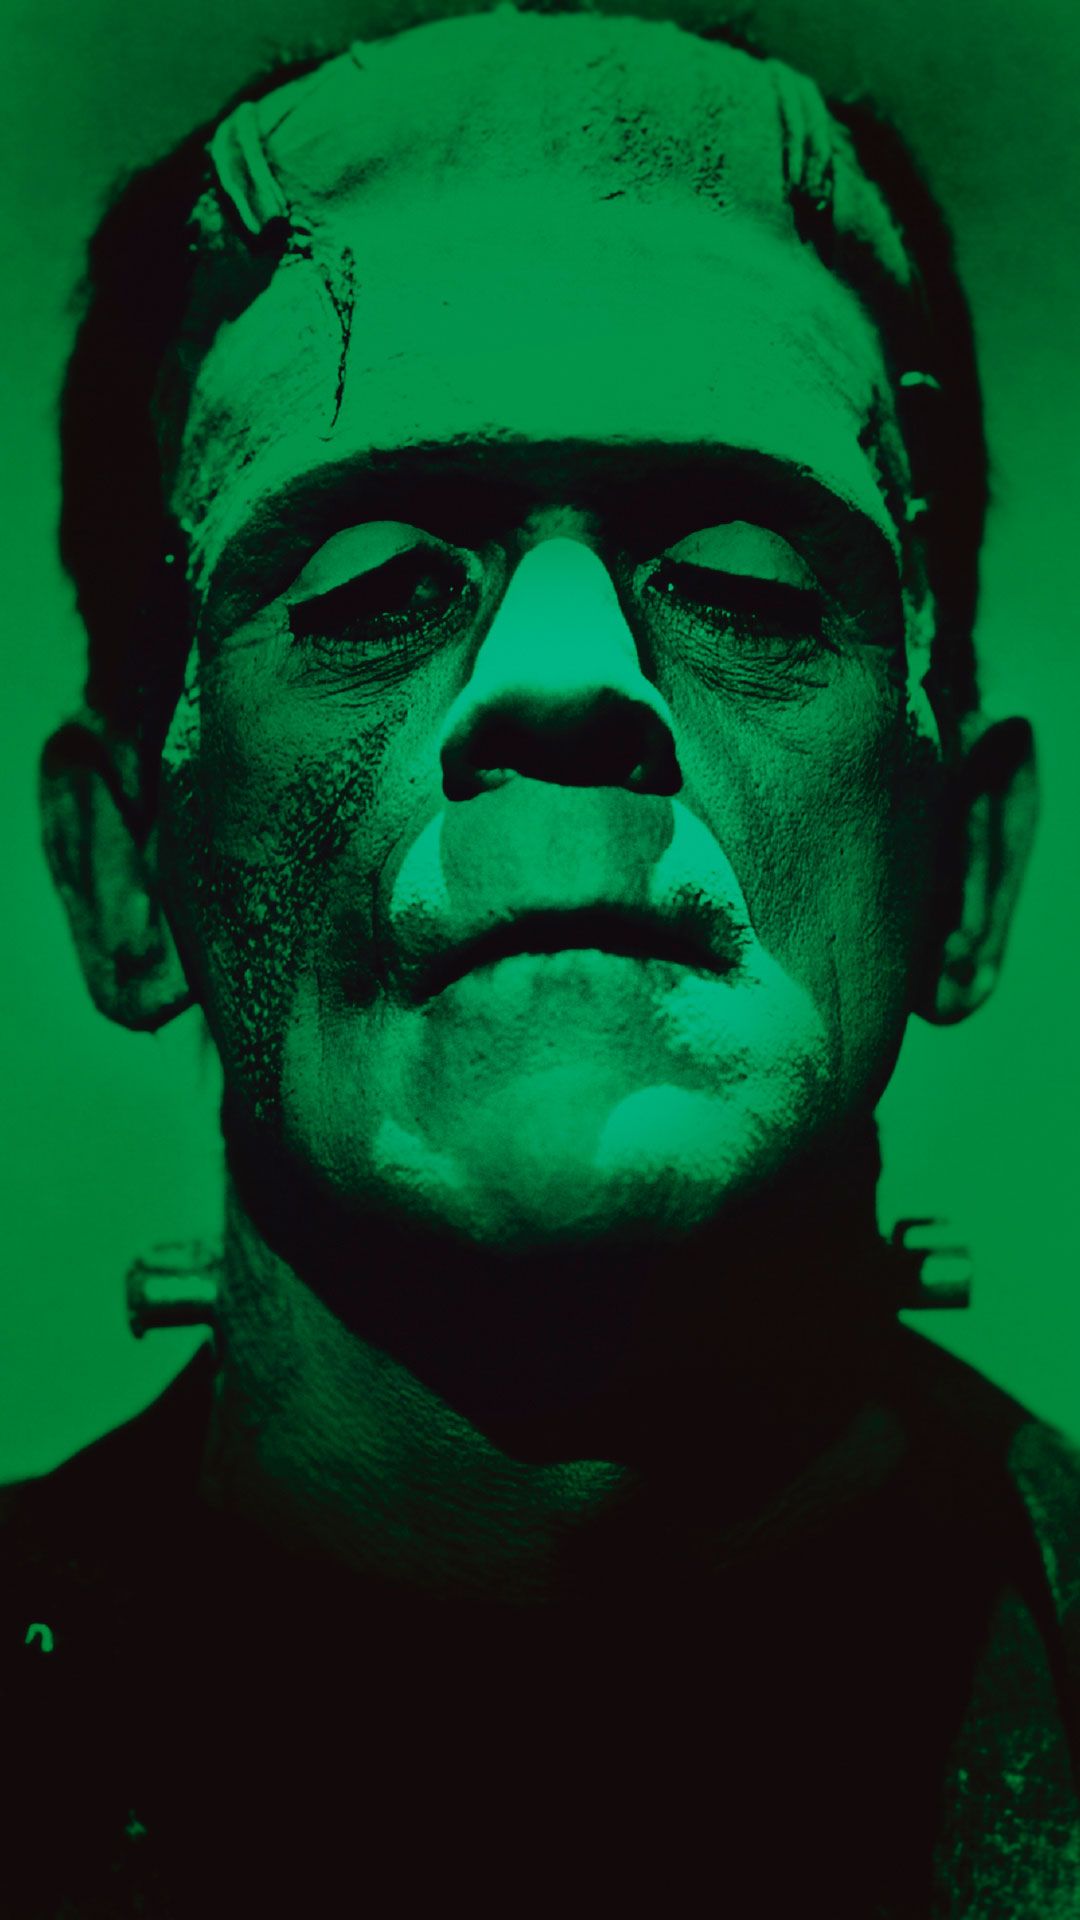 Frankenstein Wallpaper. Frankenstein art, Horror posters, Horror movie art